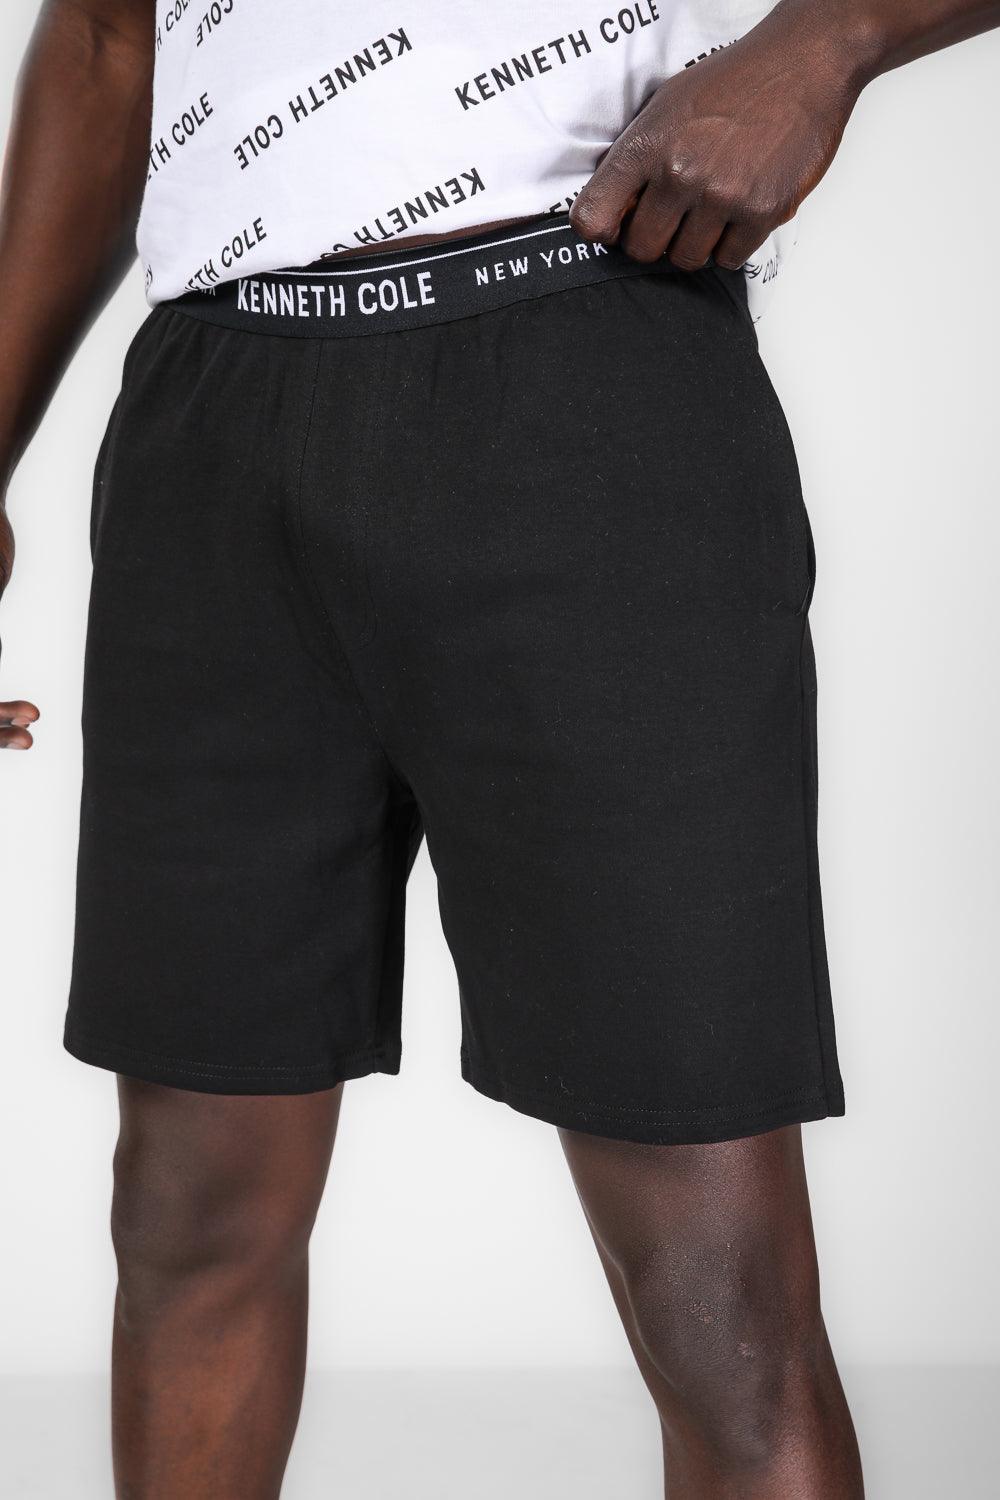 KENNETH COLE - סט פיג'מה קצרה לגבר בצבע לבן ושחור - MASHBIR//365